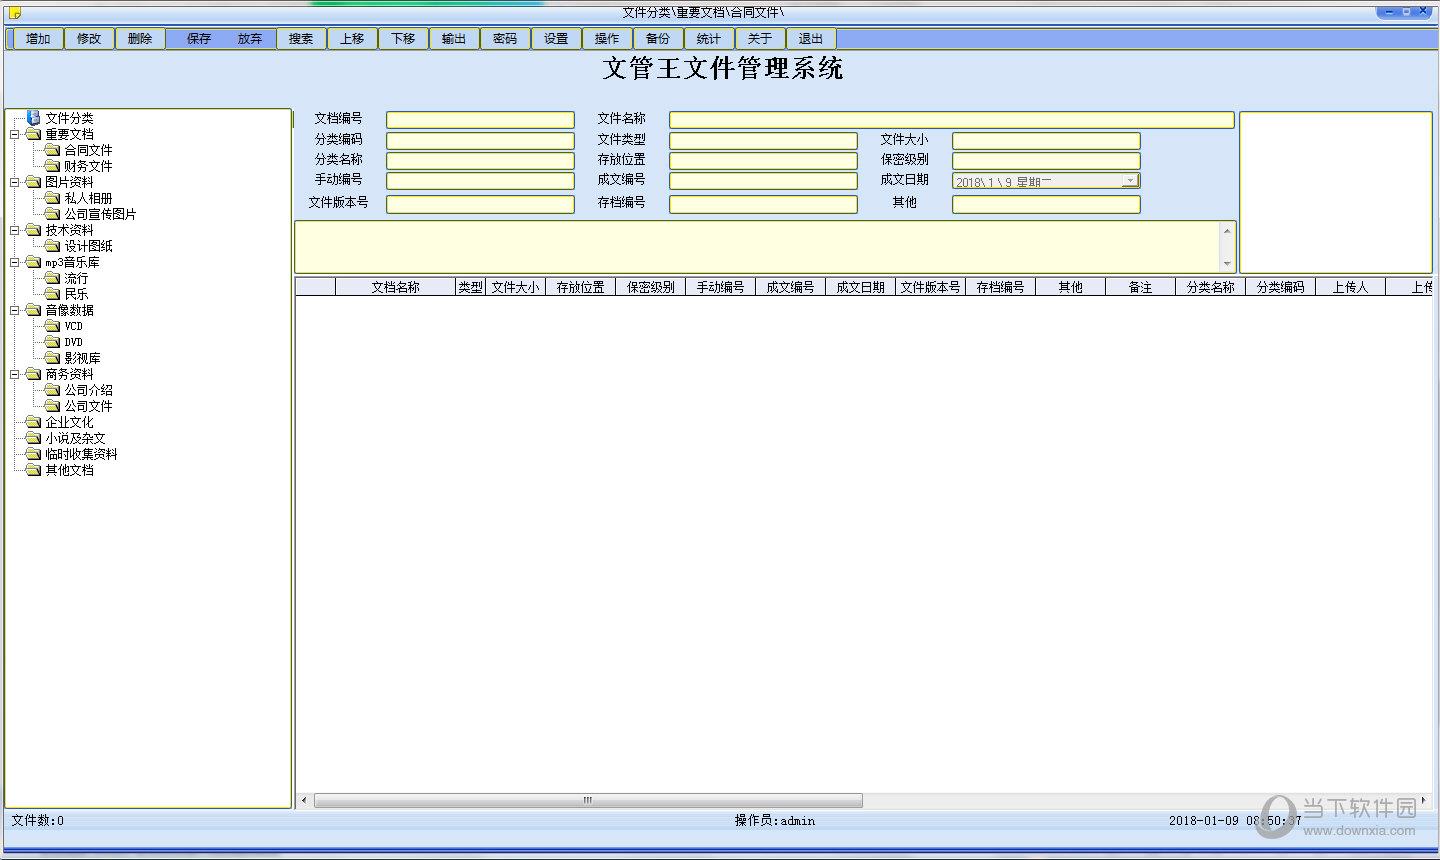 文管王文件管理系统 V6.80 官方单机版